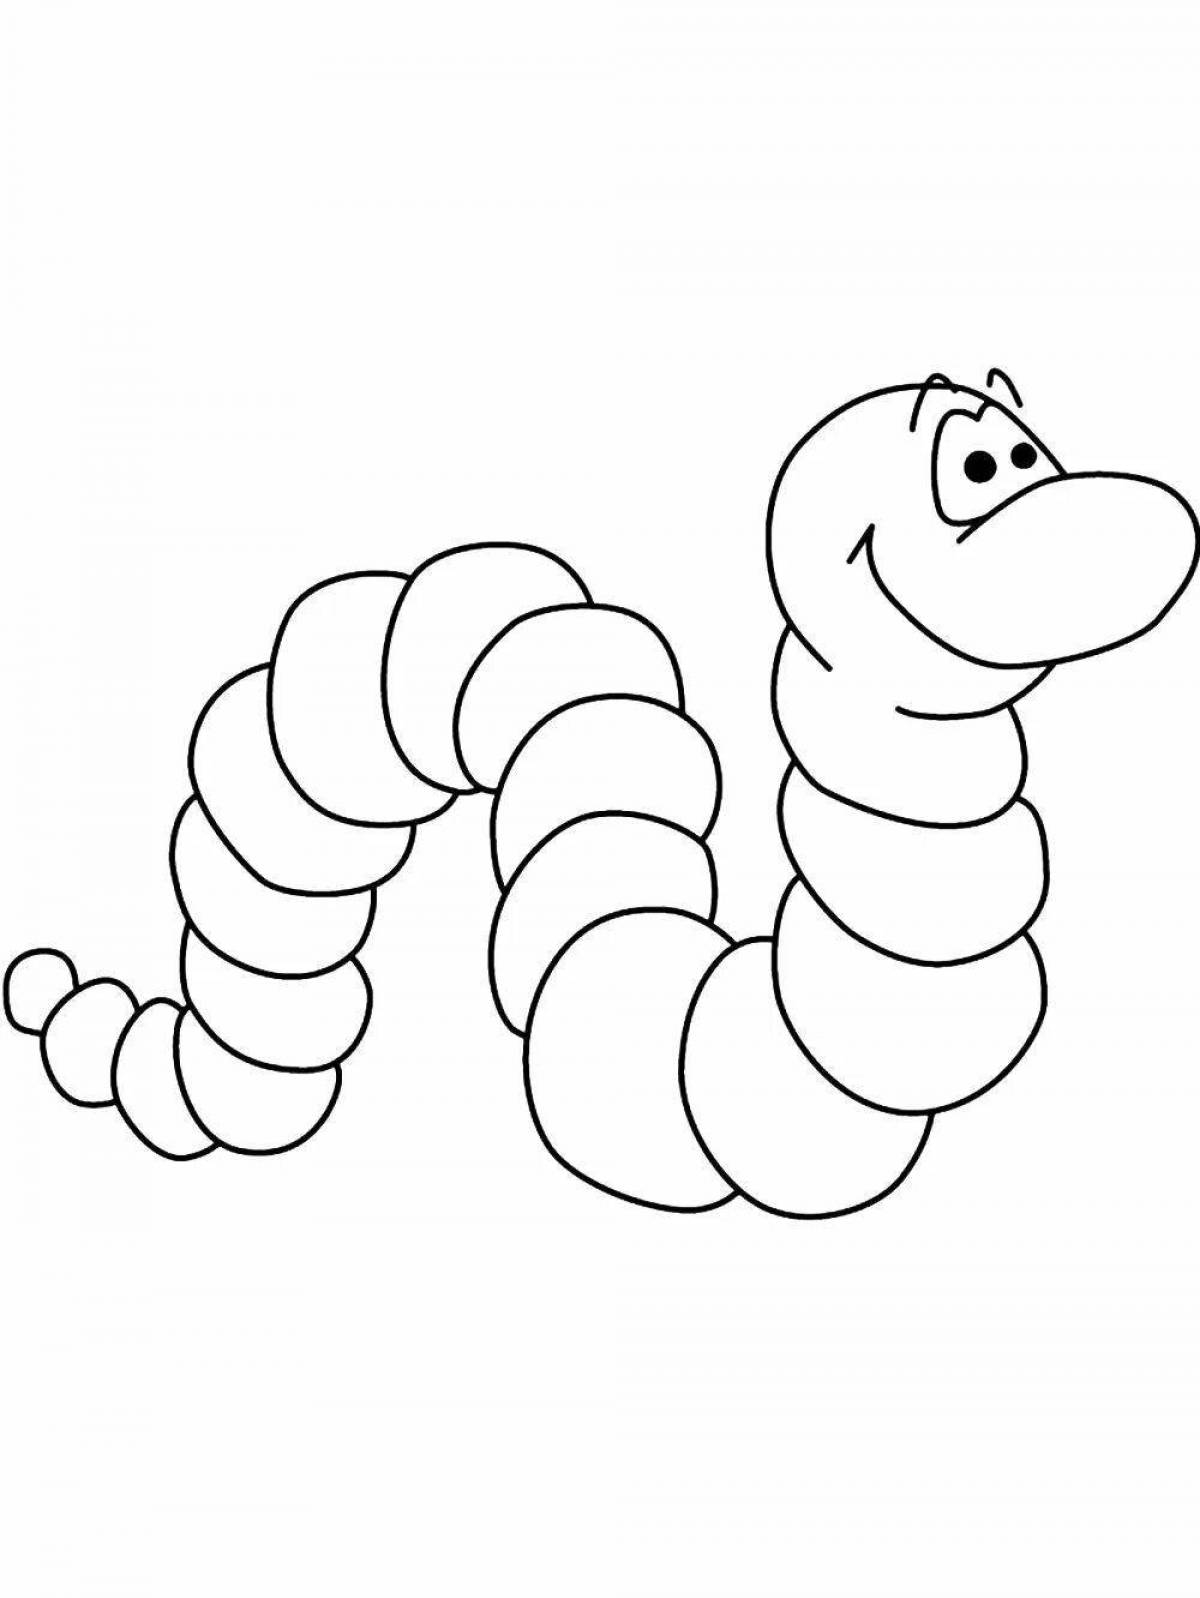 Причудливая раскраска червя для детей